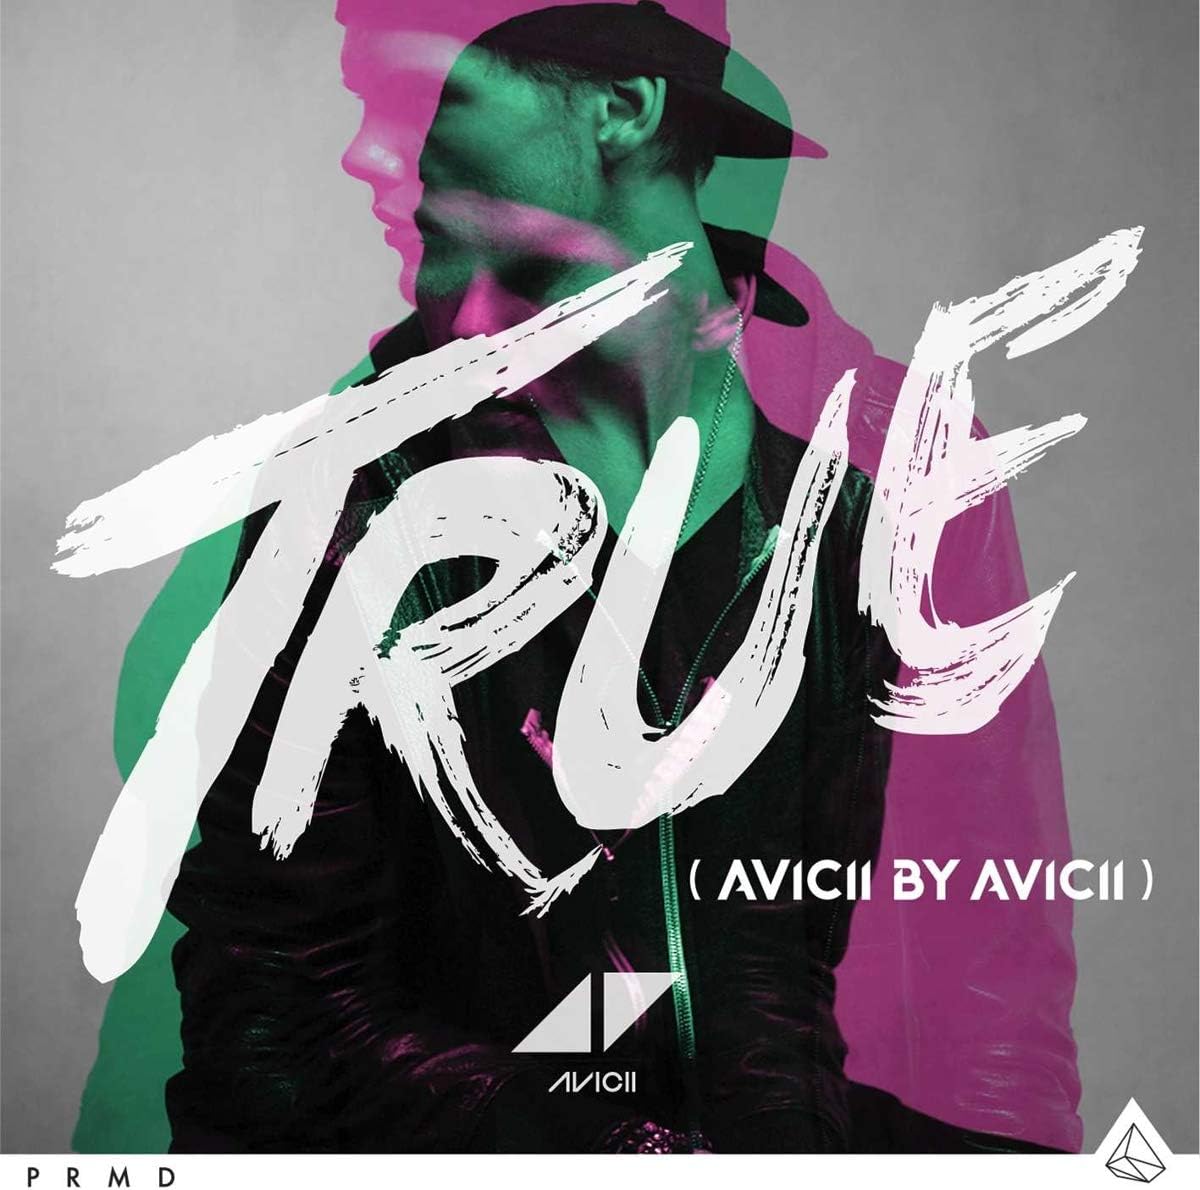 AVIICI - True: Avicii By Avicii (10th Anniversary Edition) - 2LP - 180g Black Vinyl